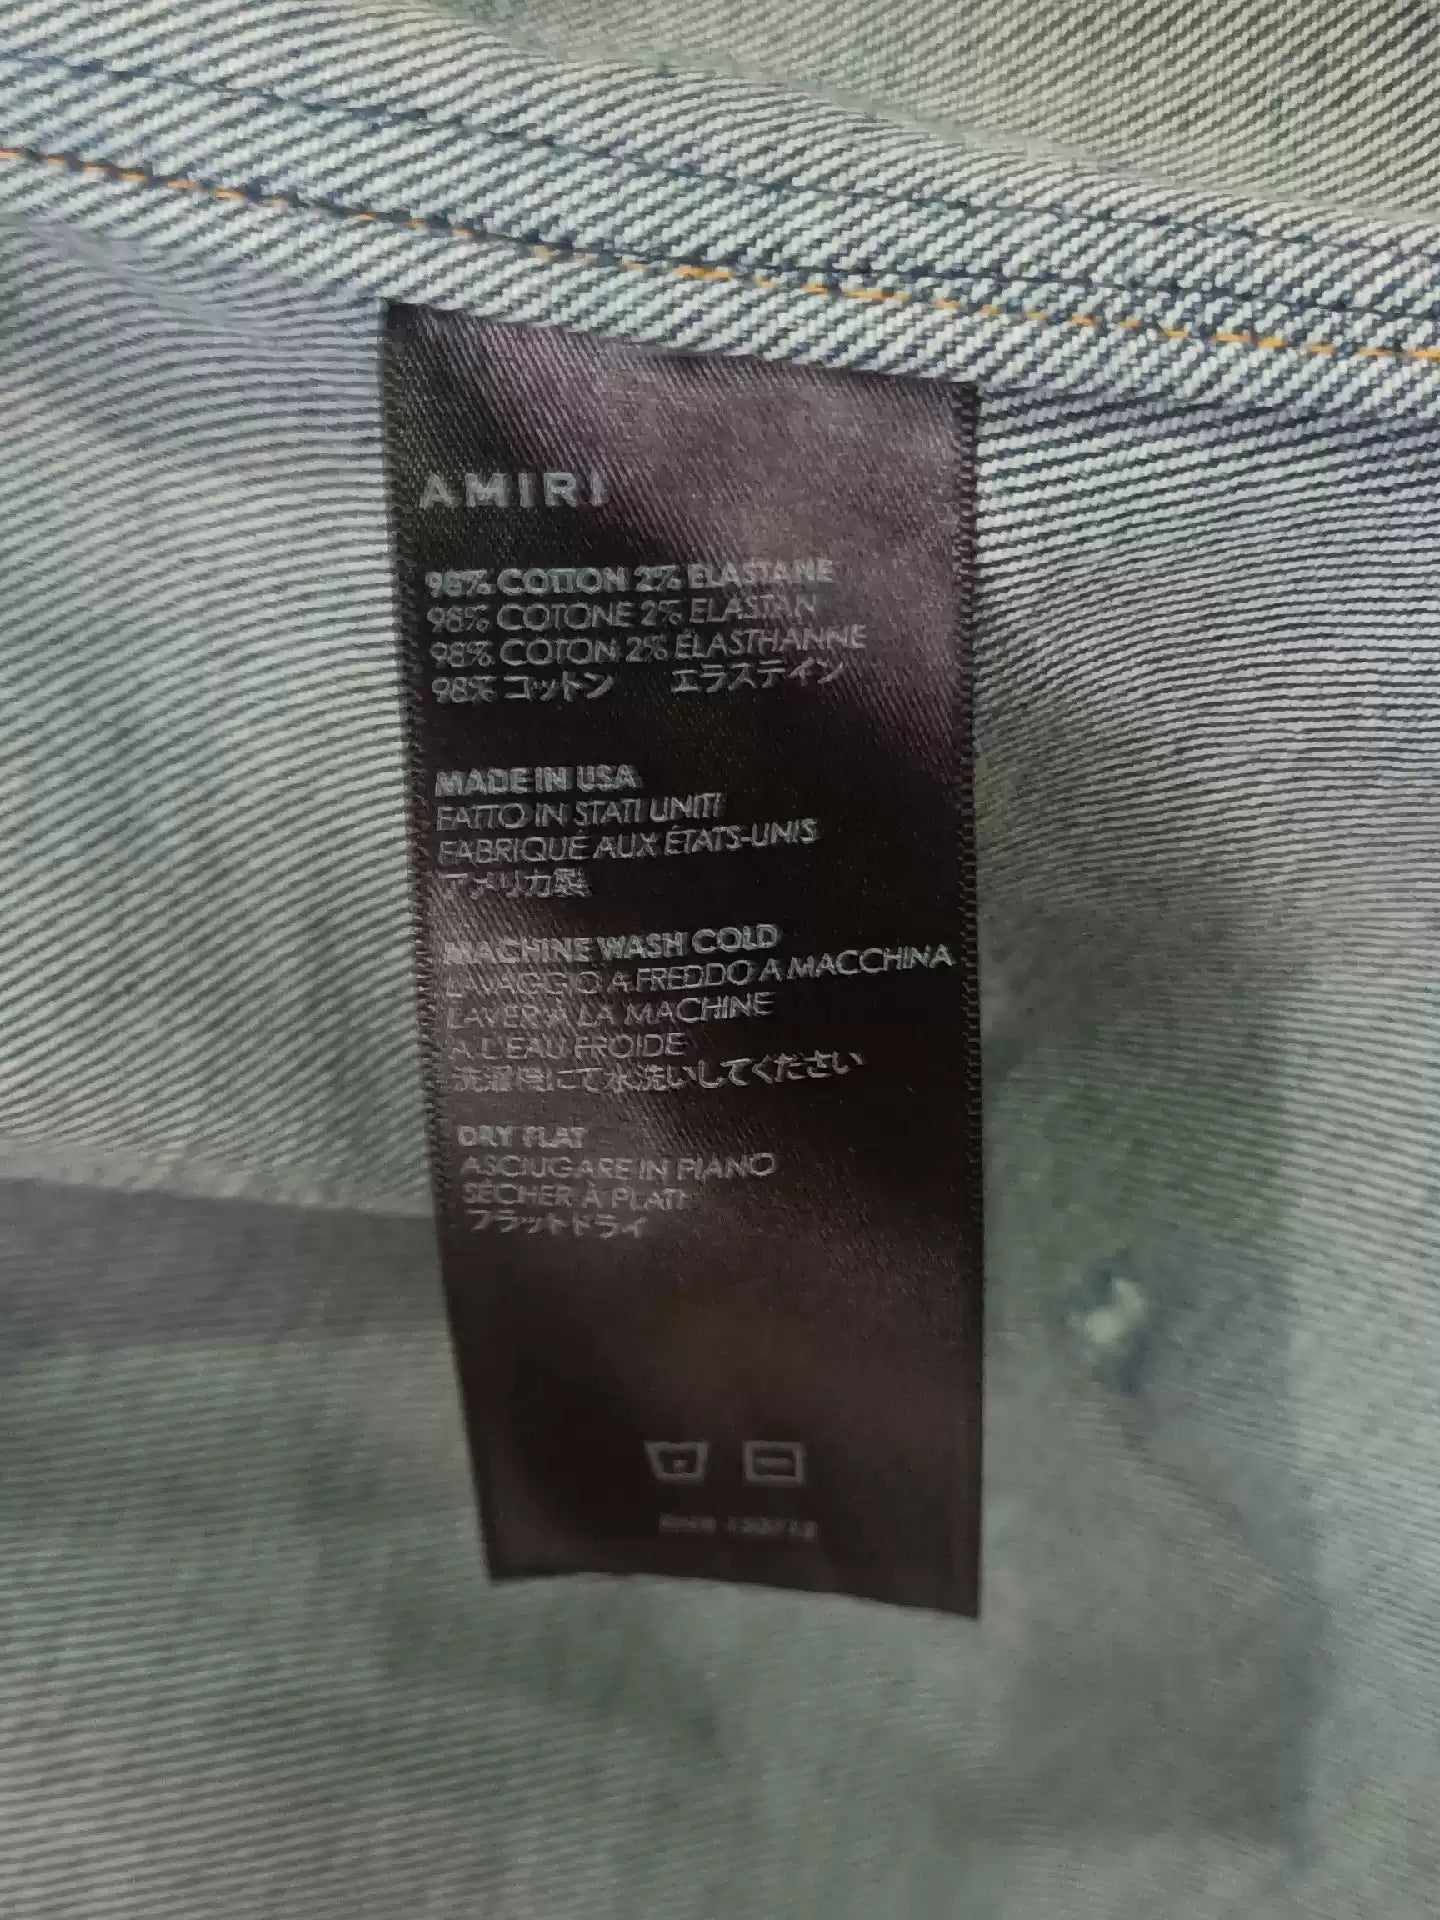 AMIRI 16ss Shotgun Damages Denim Jacket Shirt